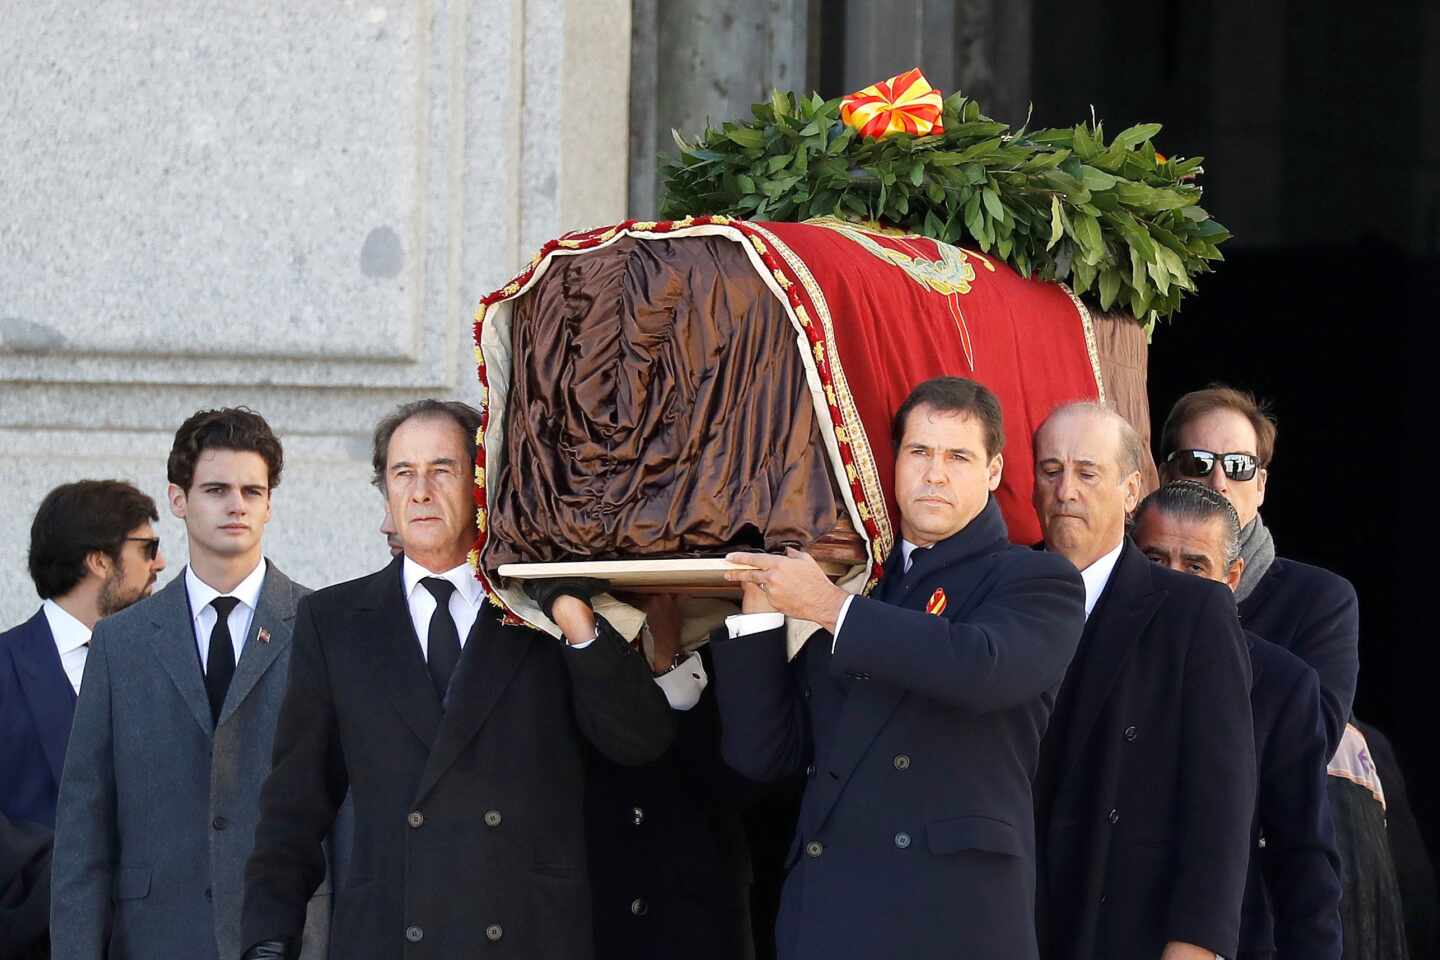 Nietos y bisnietos de Franco, trasladando el féretro con los restos del dictador tras la exhumación